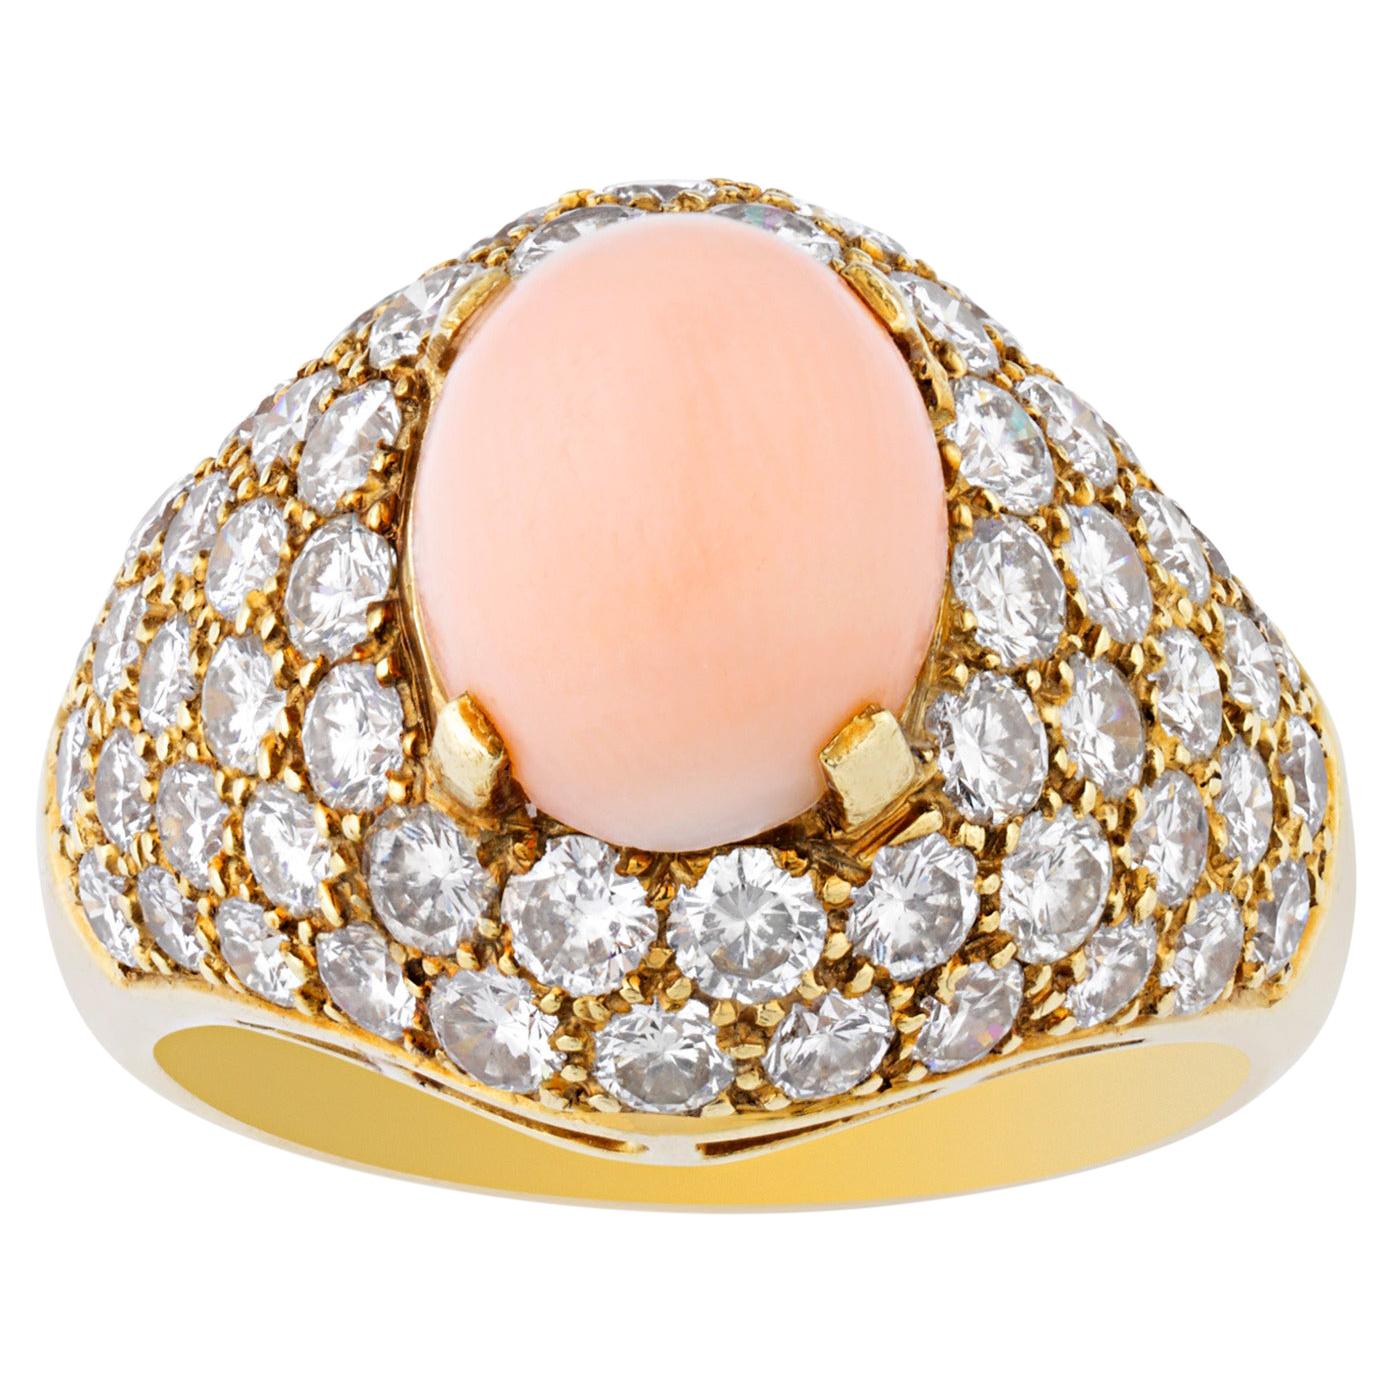 Van Cleef & Arpels Vintage Coral Diamond Ring